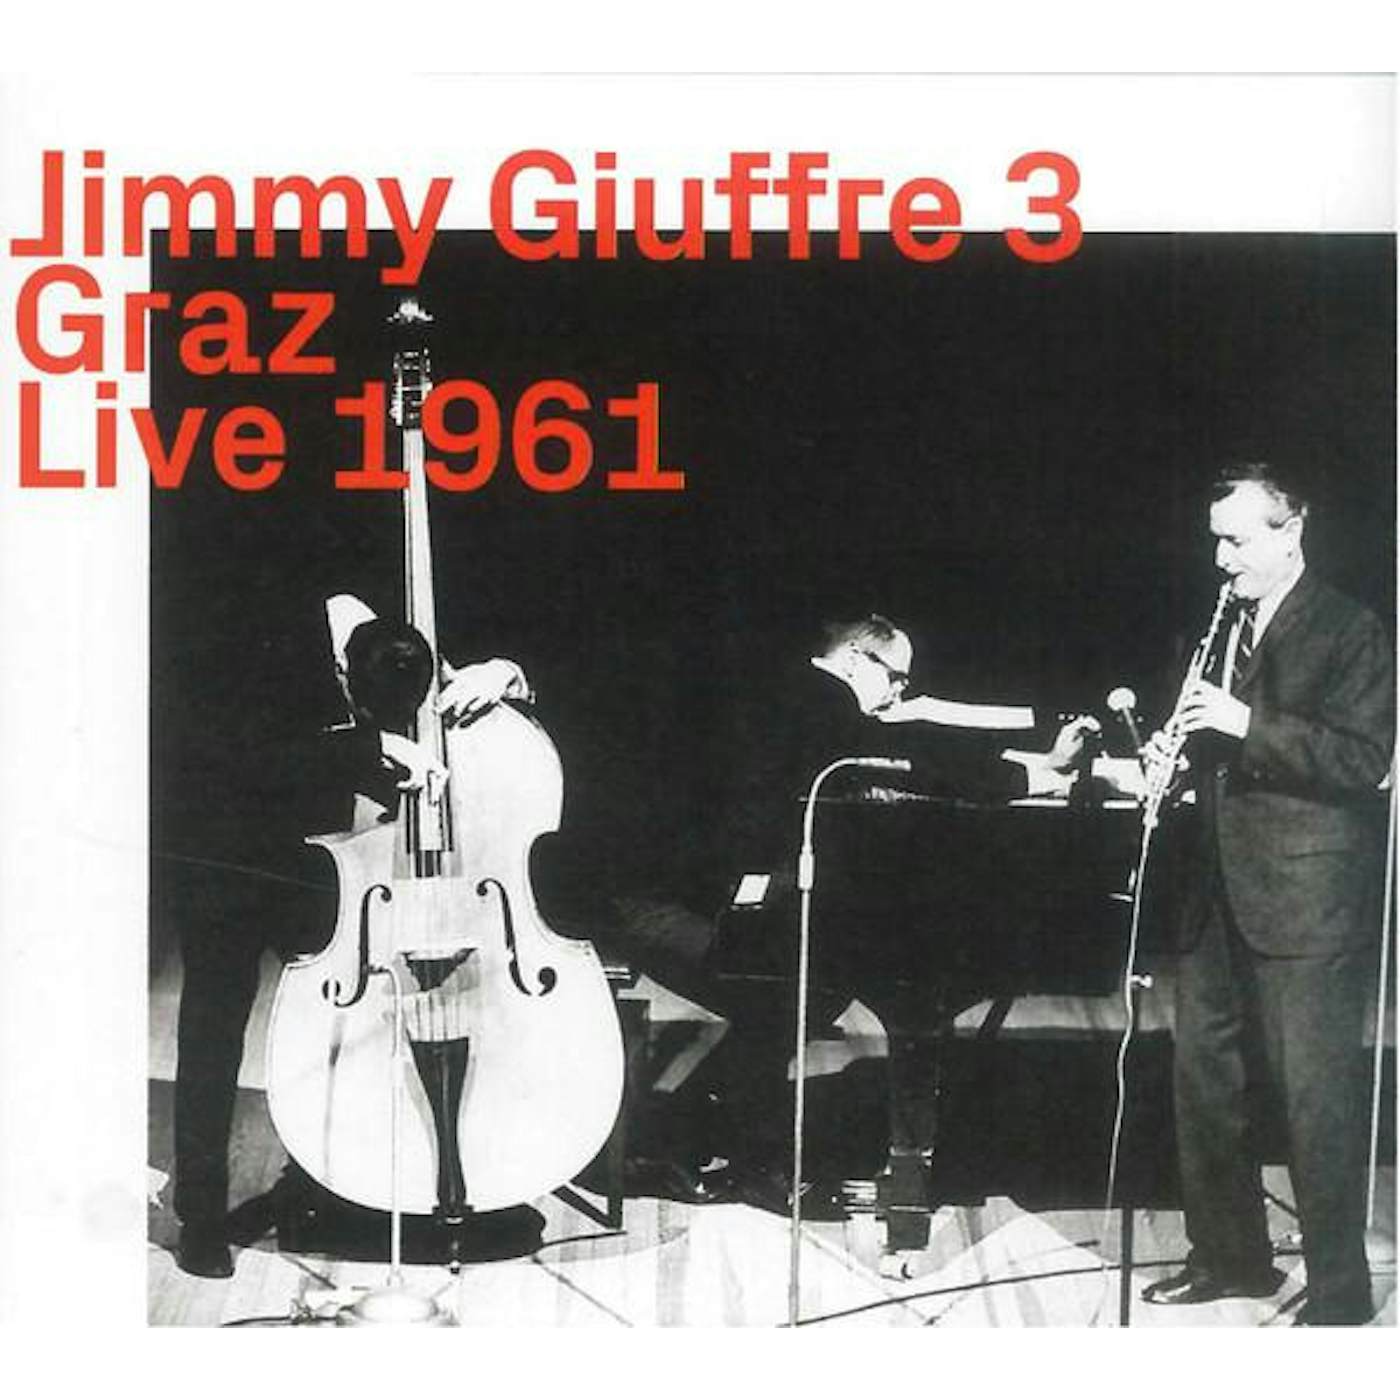 Jimmy Giuffre GRAZ 1961 CD